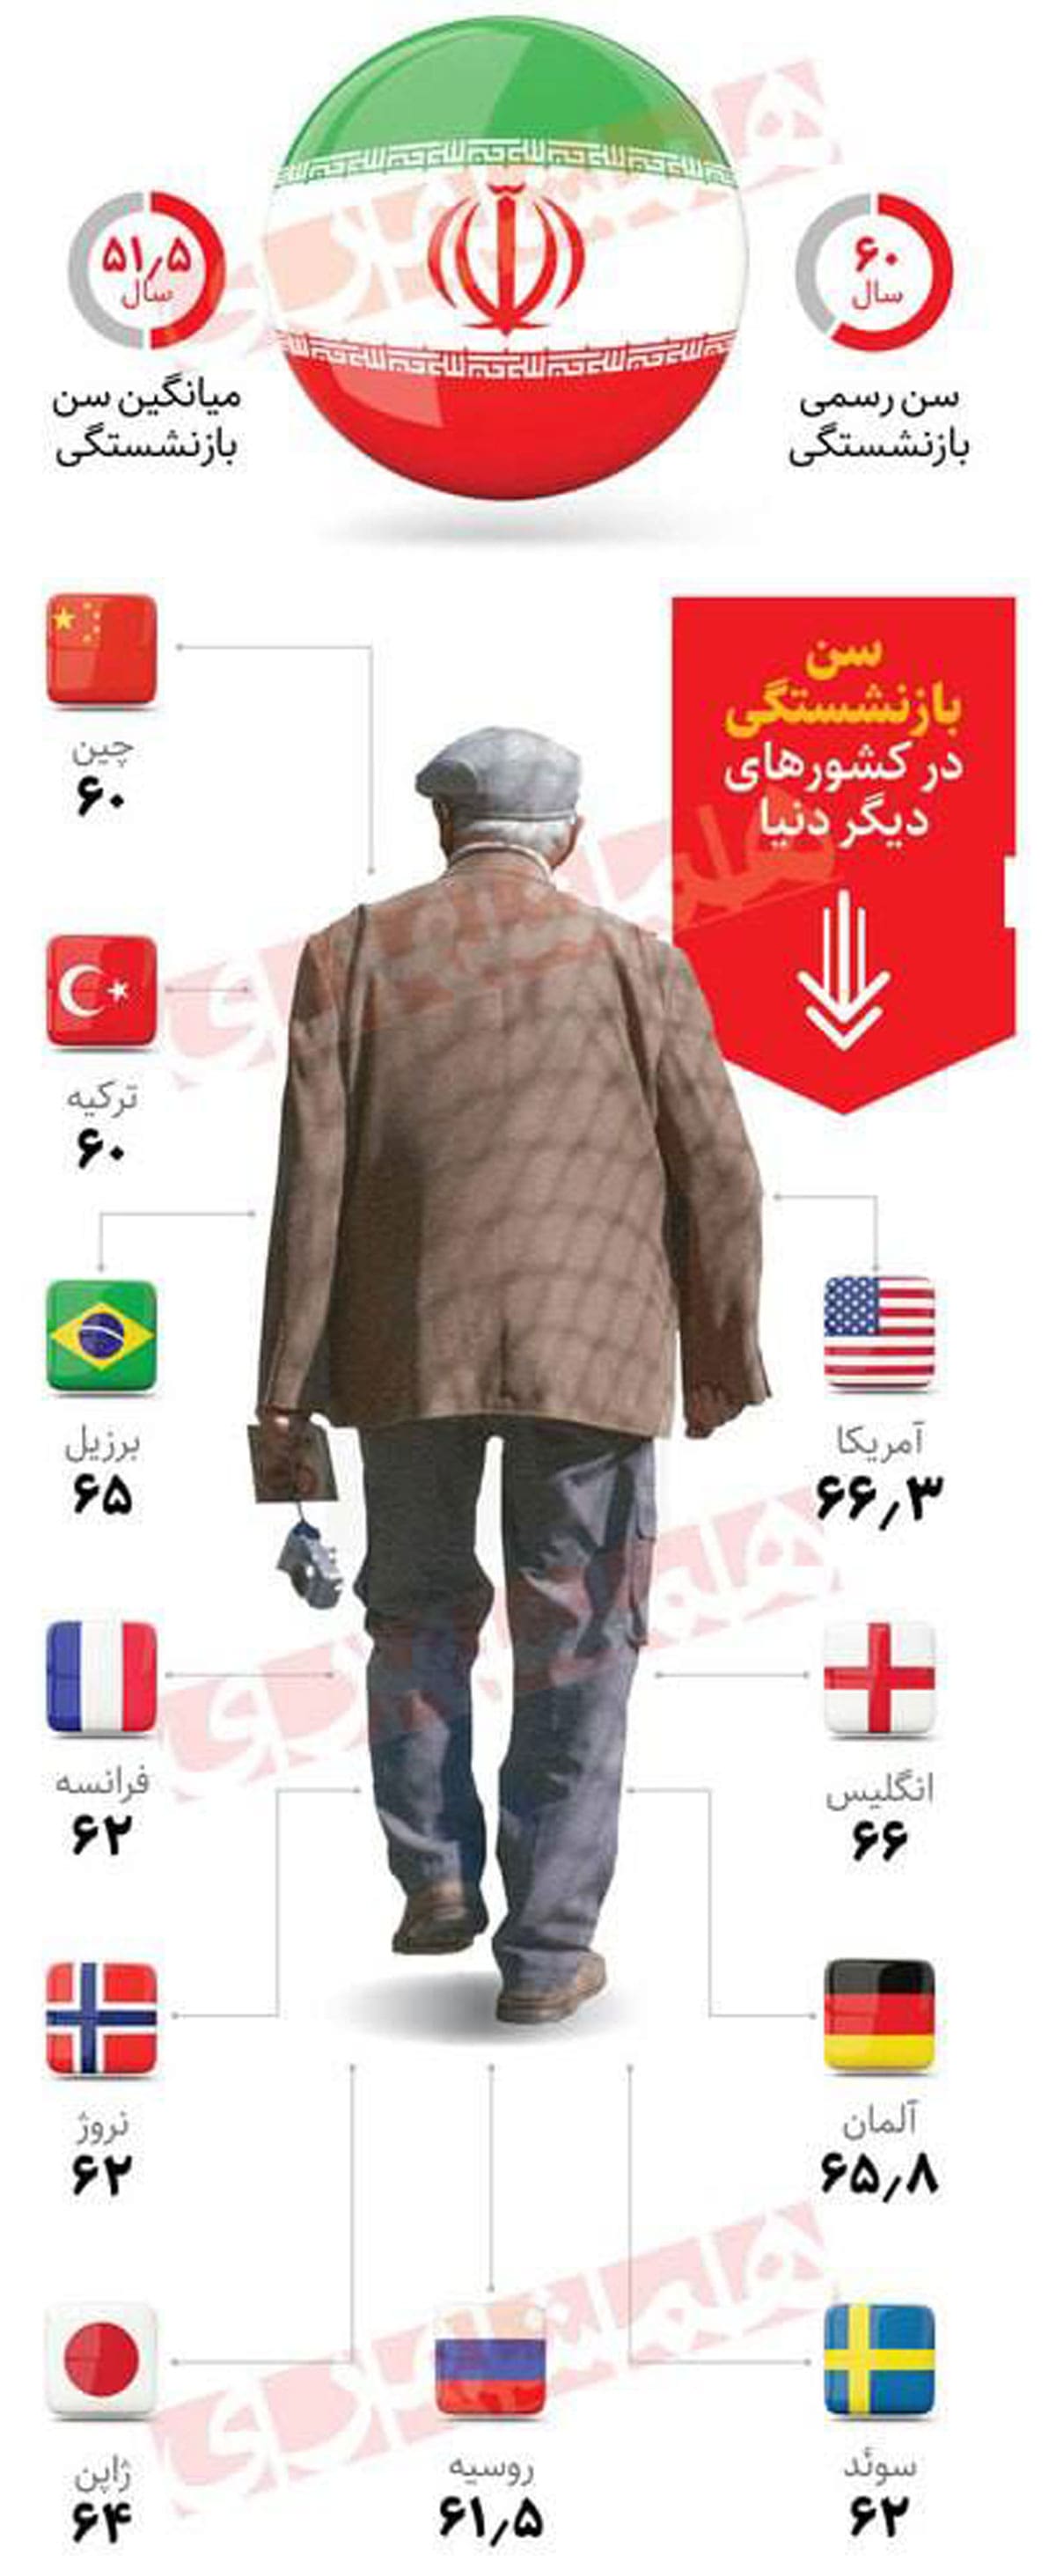 سن بازنشستگی در ایران بیشتر است یا دیگر کشورها؟/ اینفوگرافی